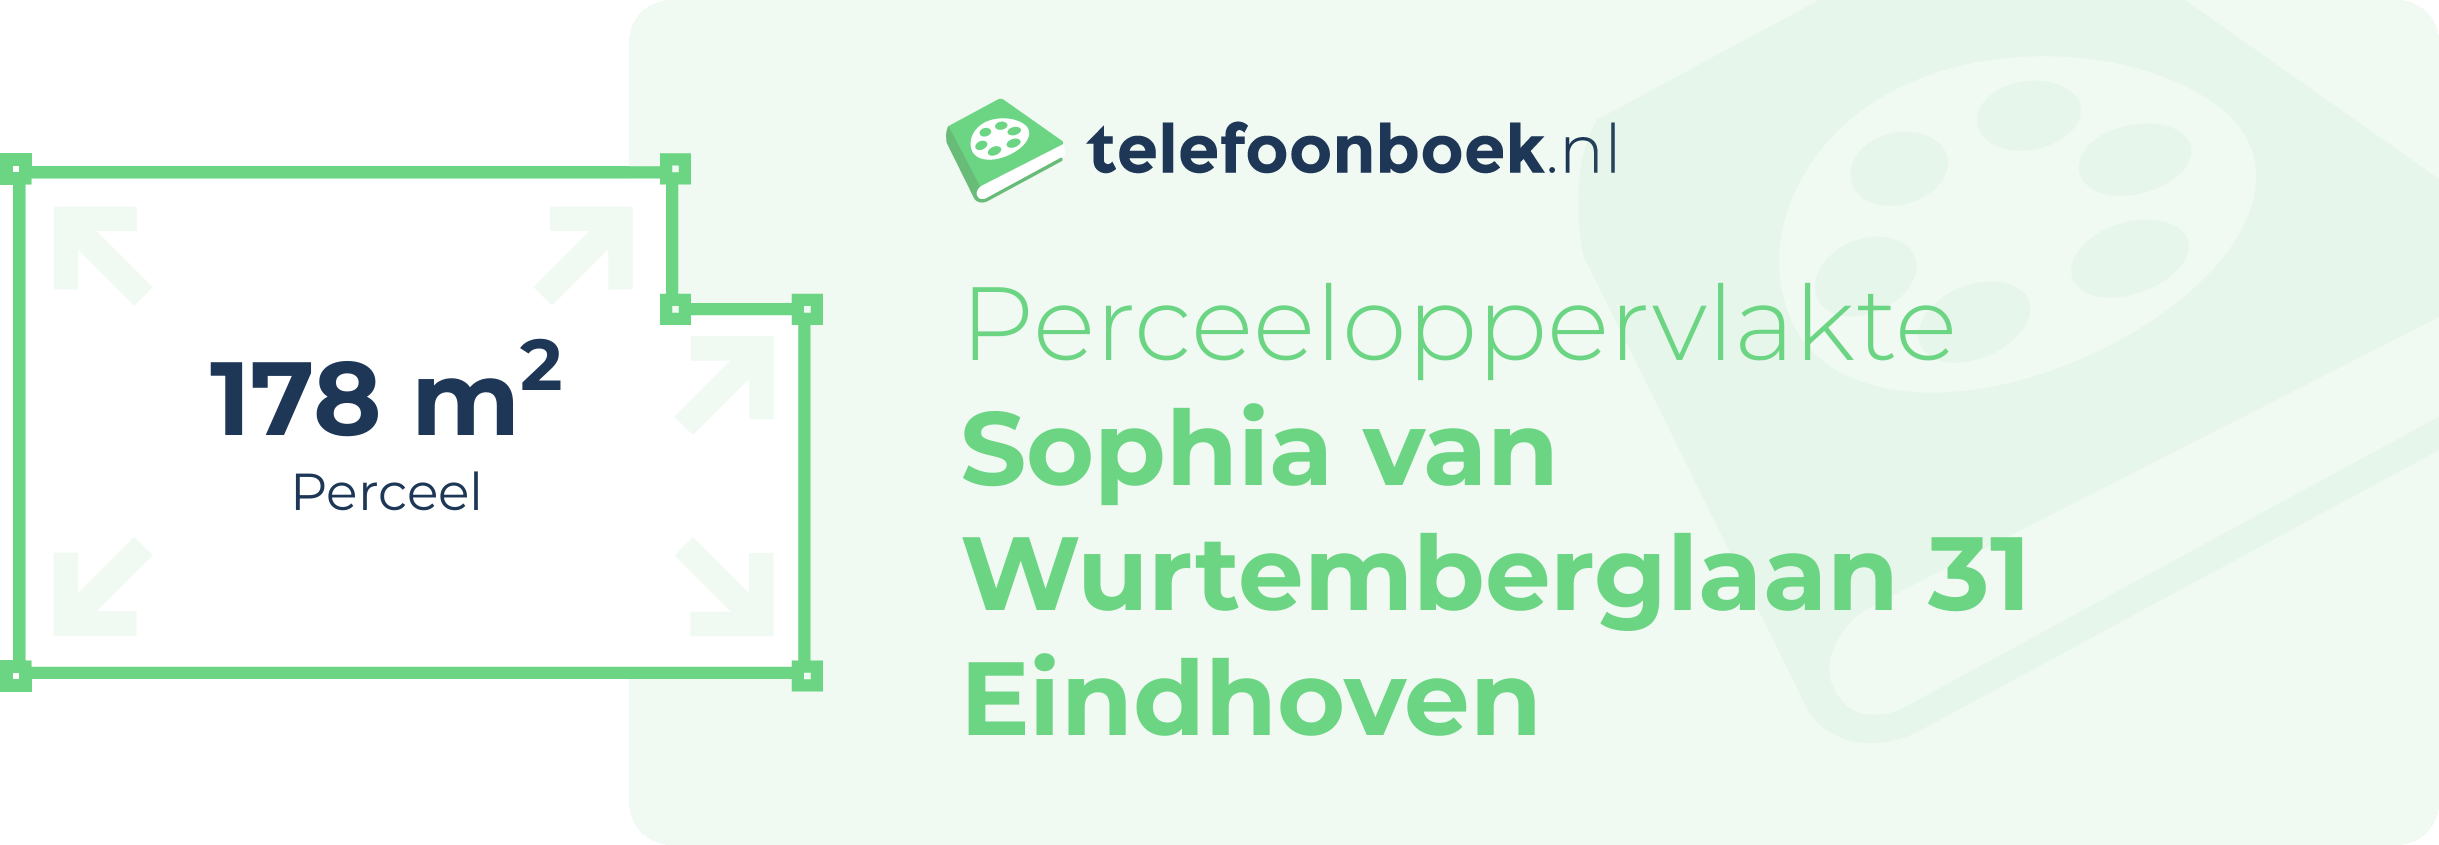 Perceeloppervlakte Sophia Van Wurtemberglaan 31 Eindhoven